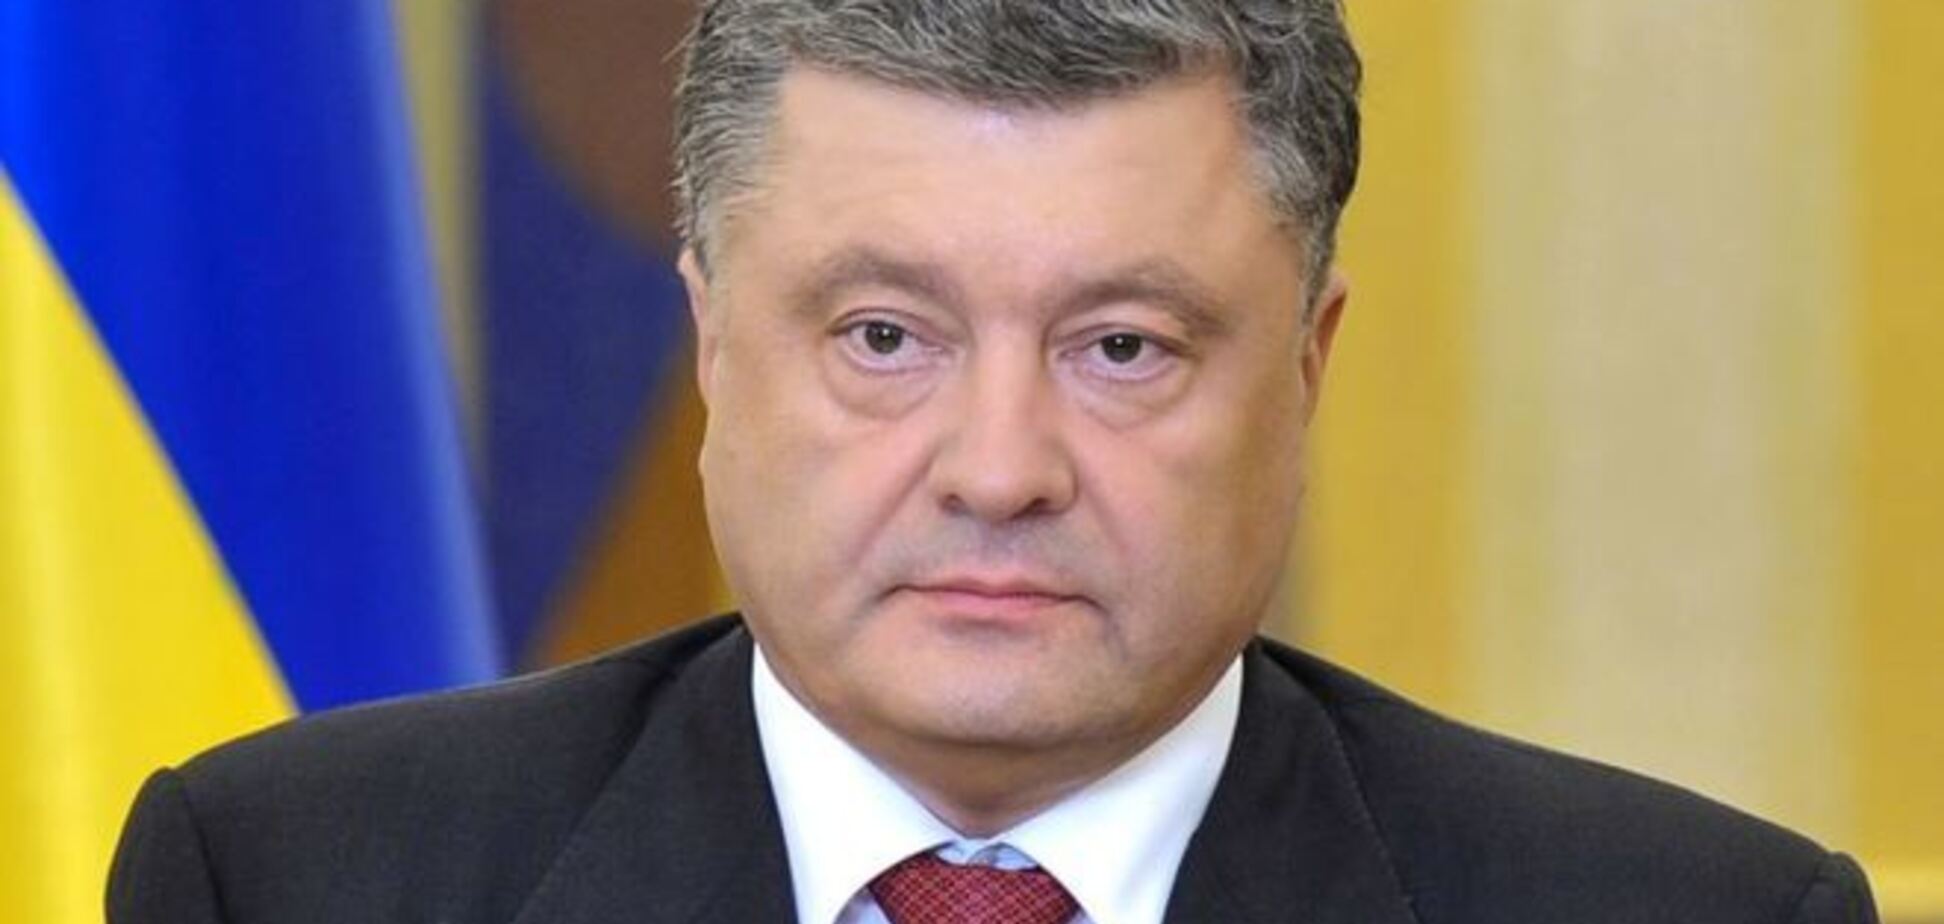 Под видом децентрализации Президент Украины взял курс на уменьшение полномочий правительства и местных органов власти